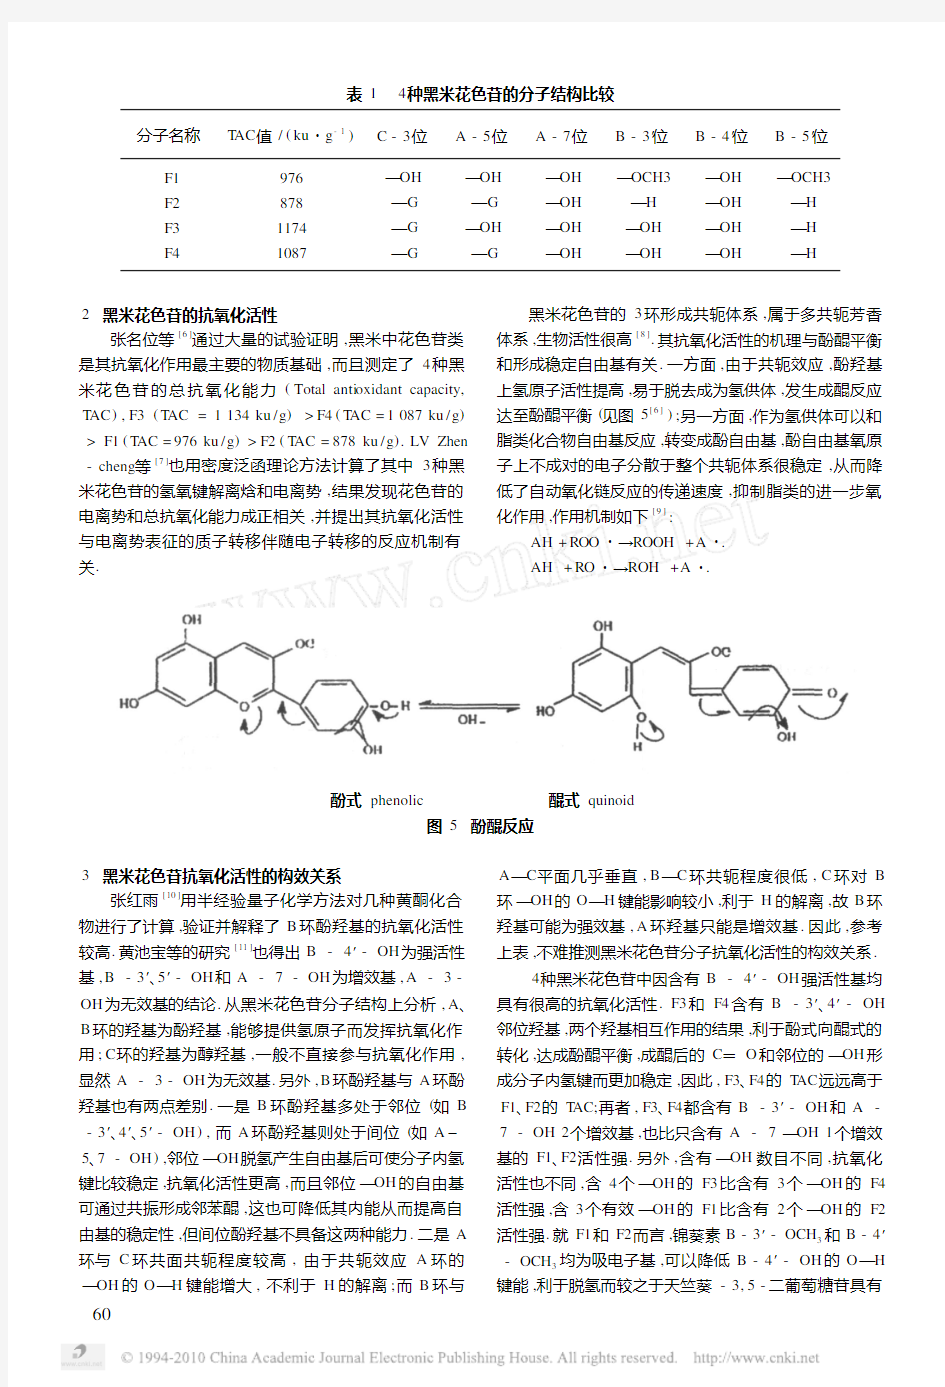 黑米色素苷化学结构与抗氧化活性的关系